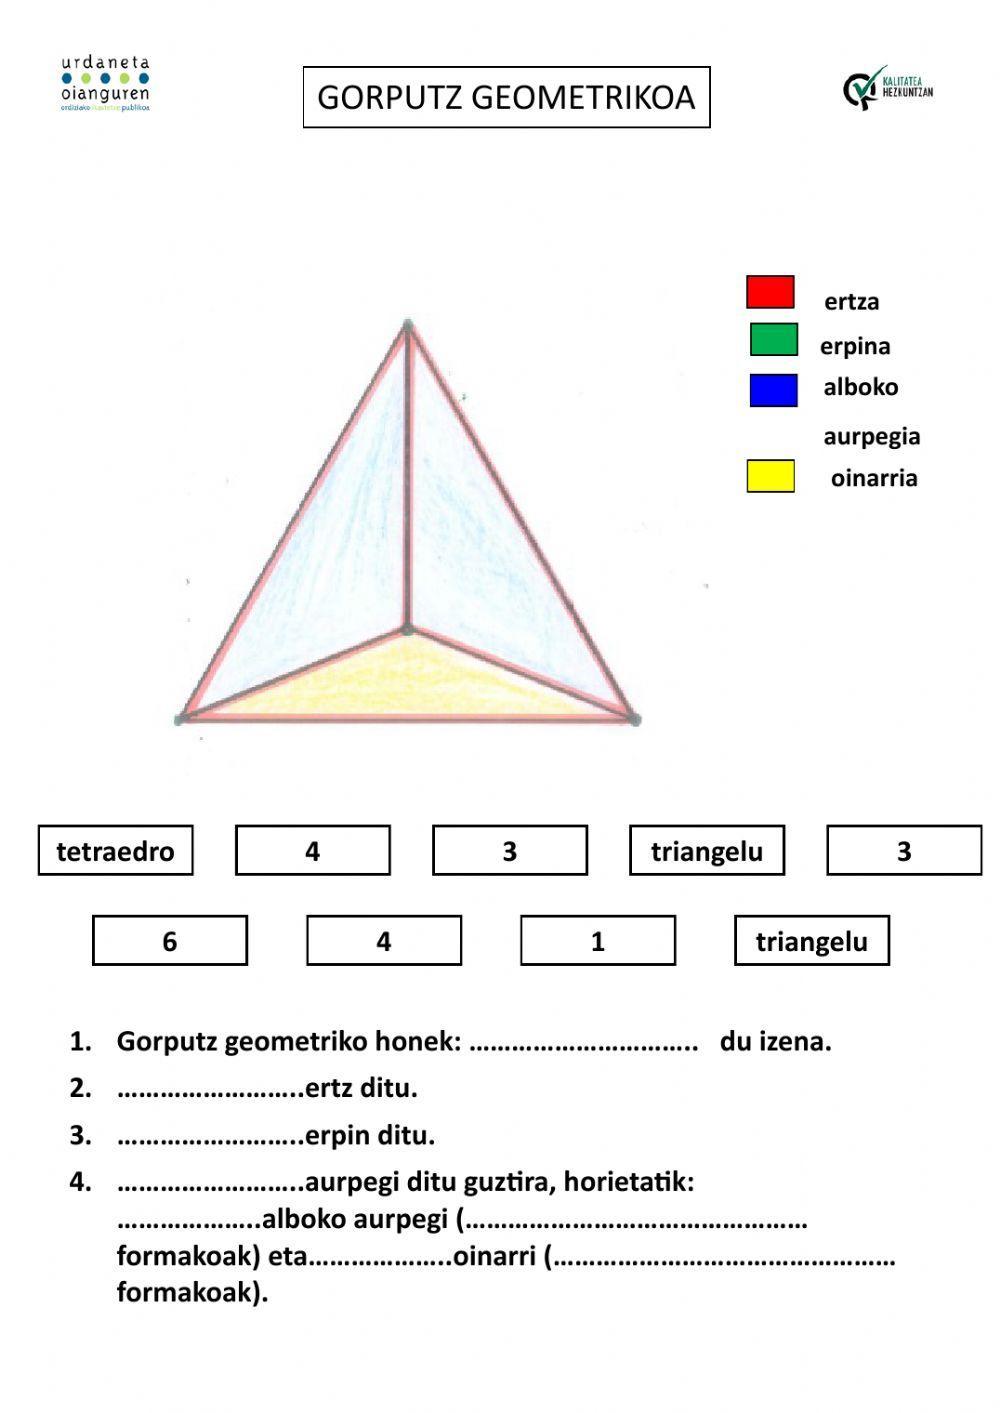 Tetraedroa